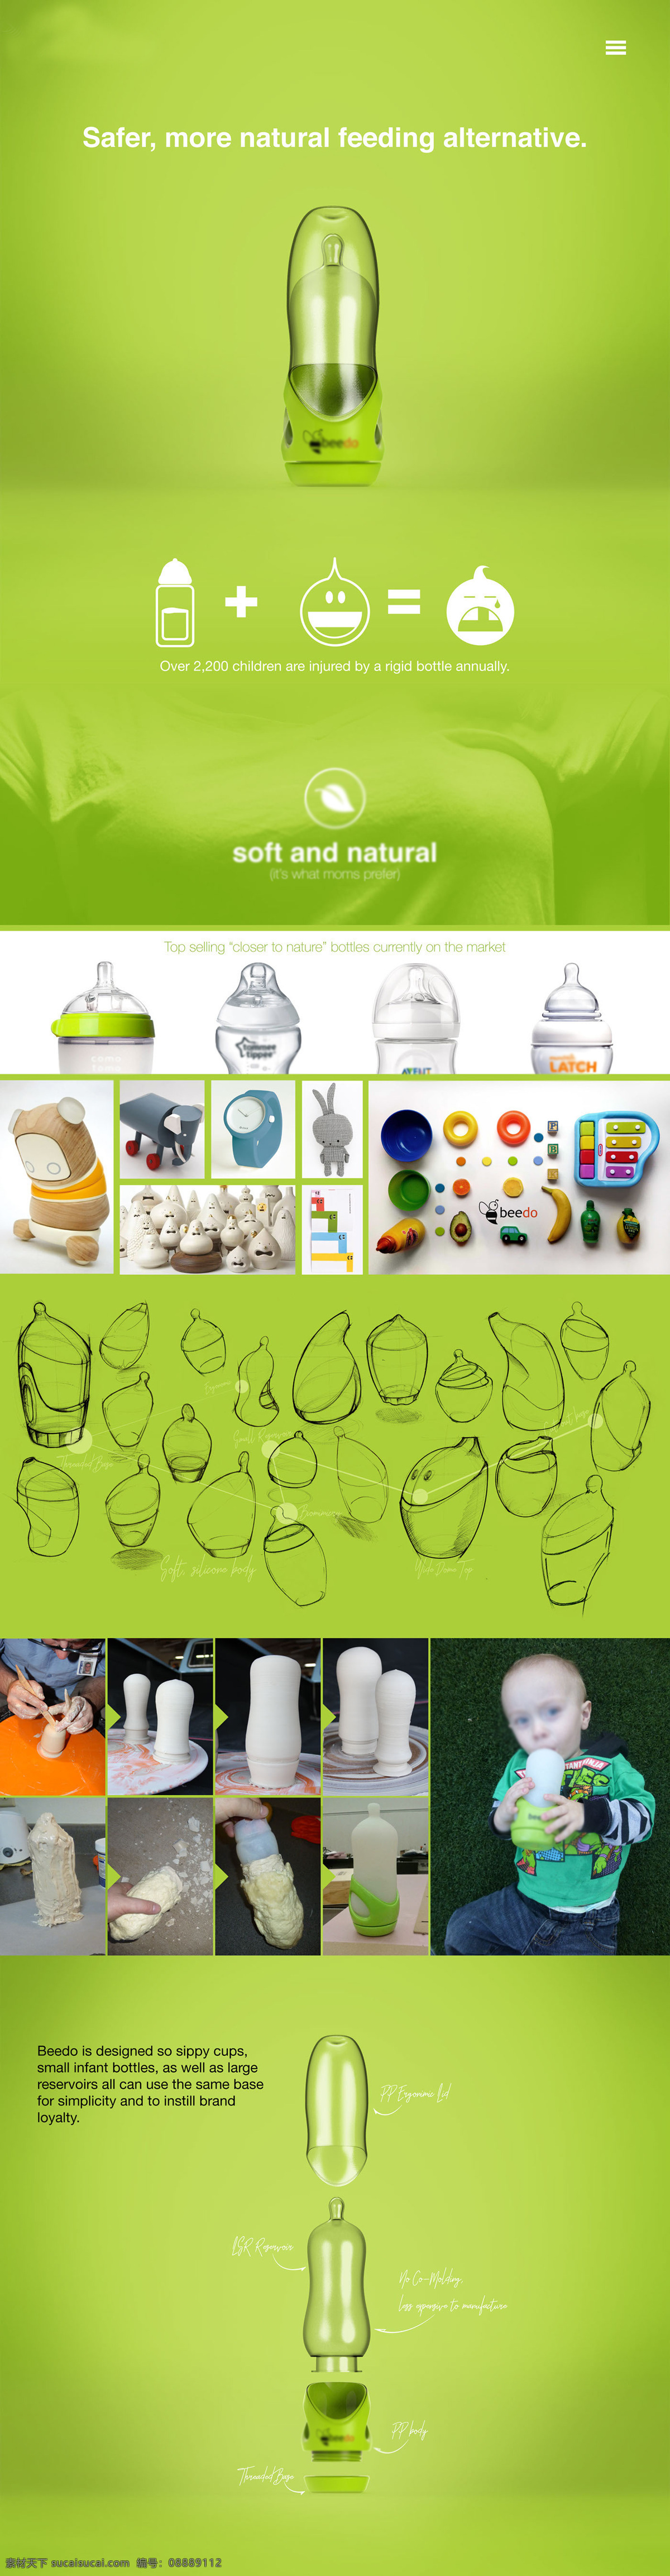 安全 硅胶 奶瓶 柔软 水瓶 概念 婴儿 产品